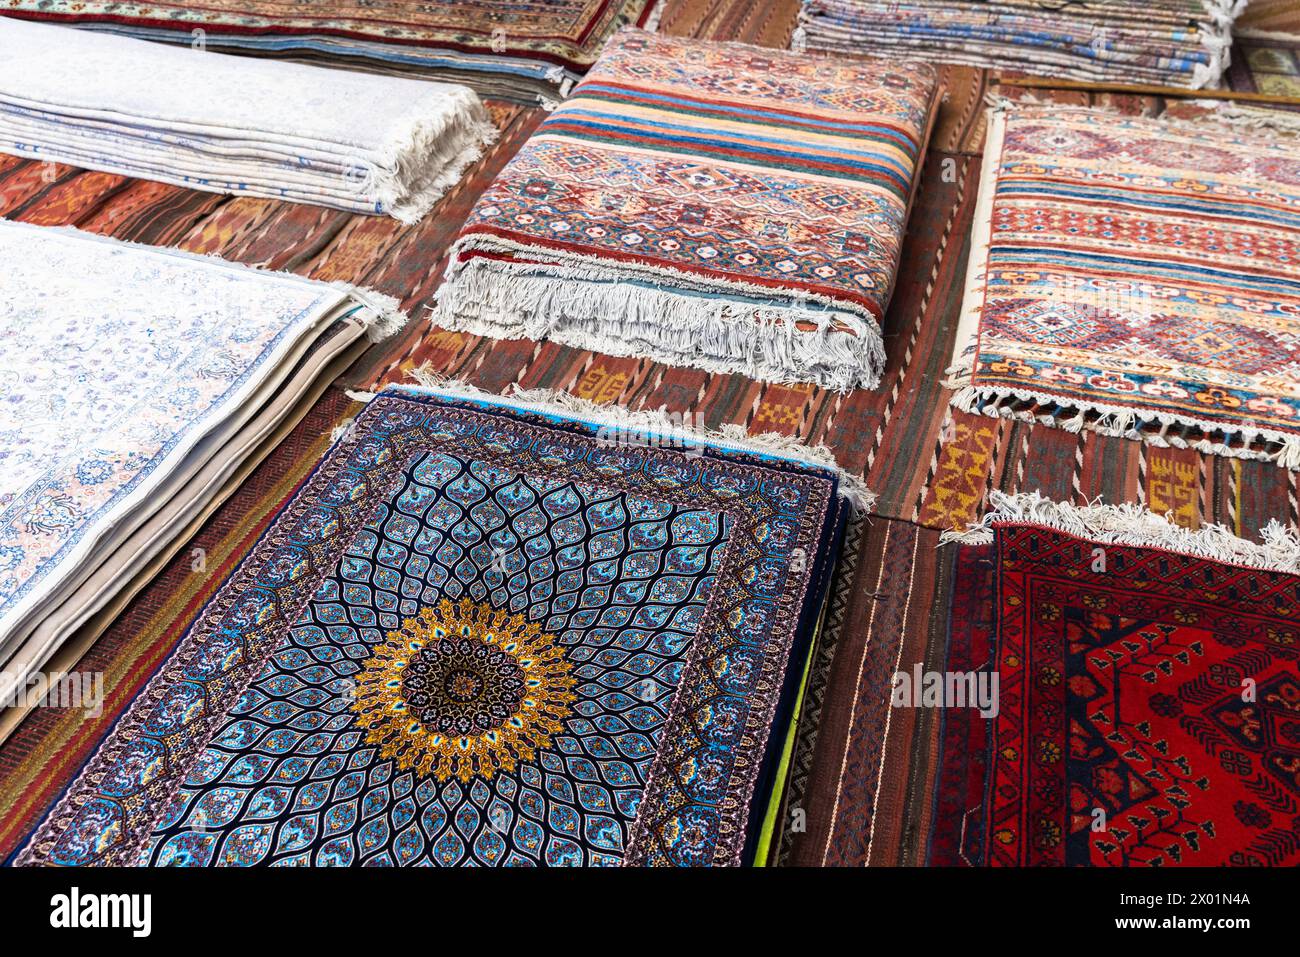 Assortiment de tapis de soie orientaux à vendre avec des motifs géométriques colorés représentés sur le bazar historique de Boukhara Banque D'Images